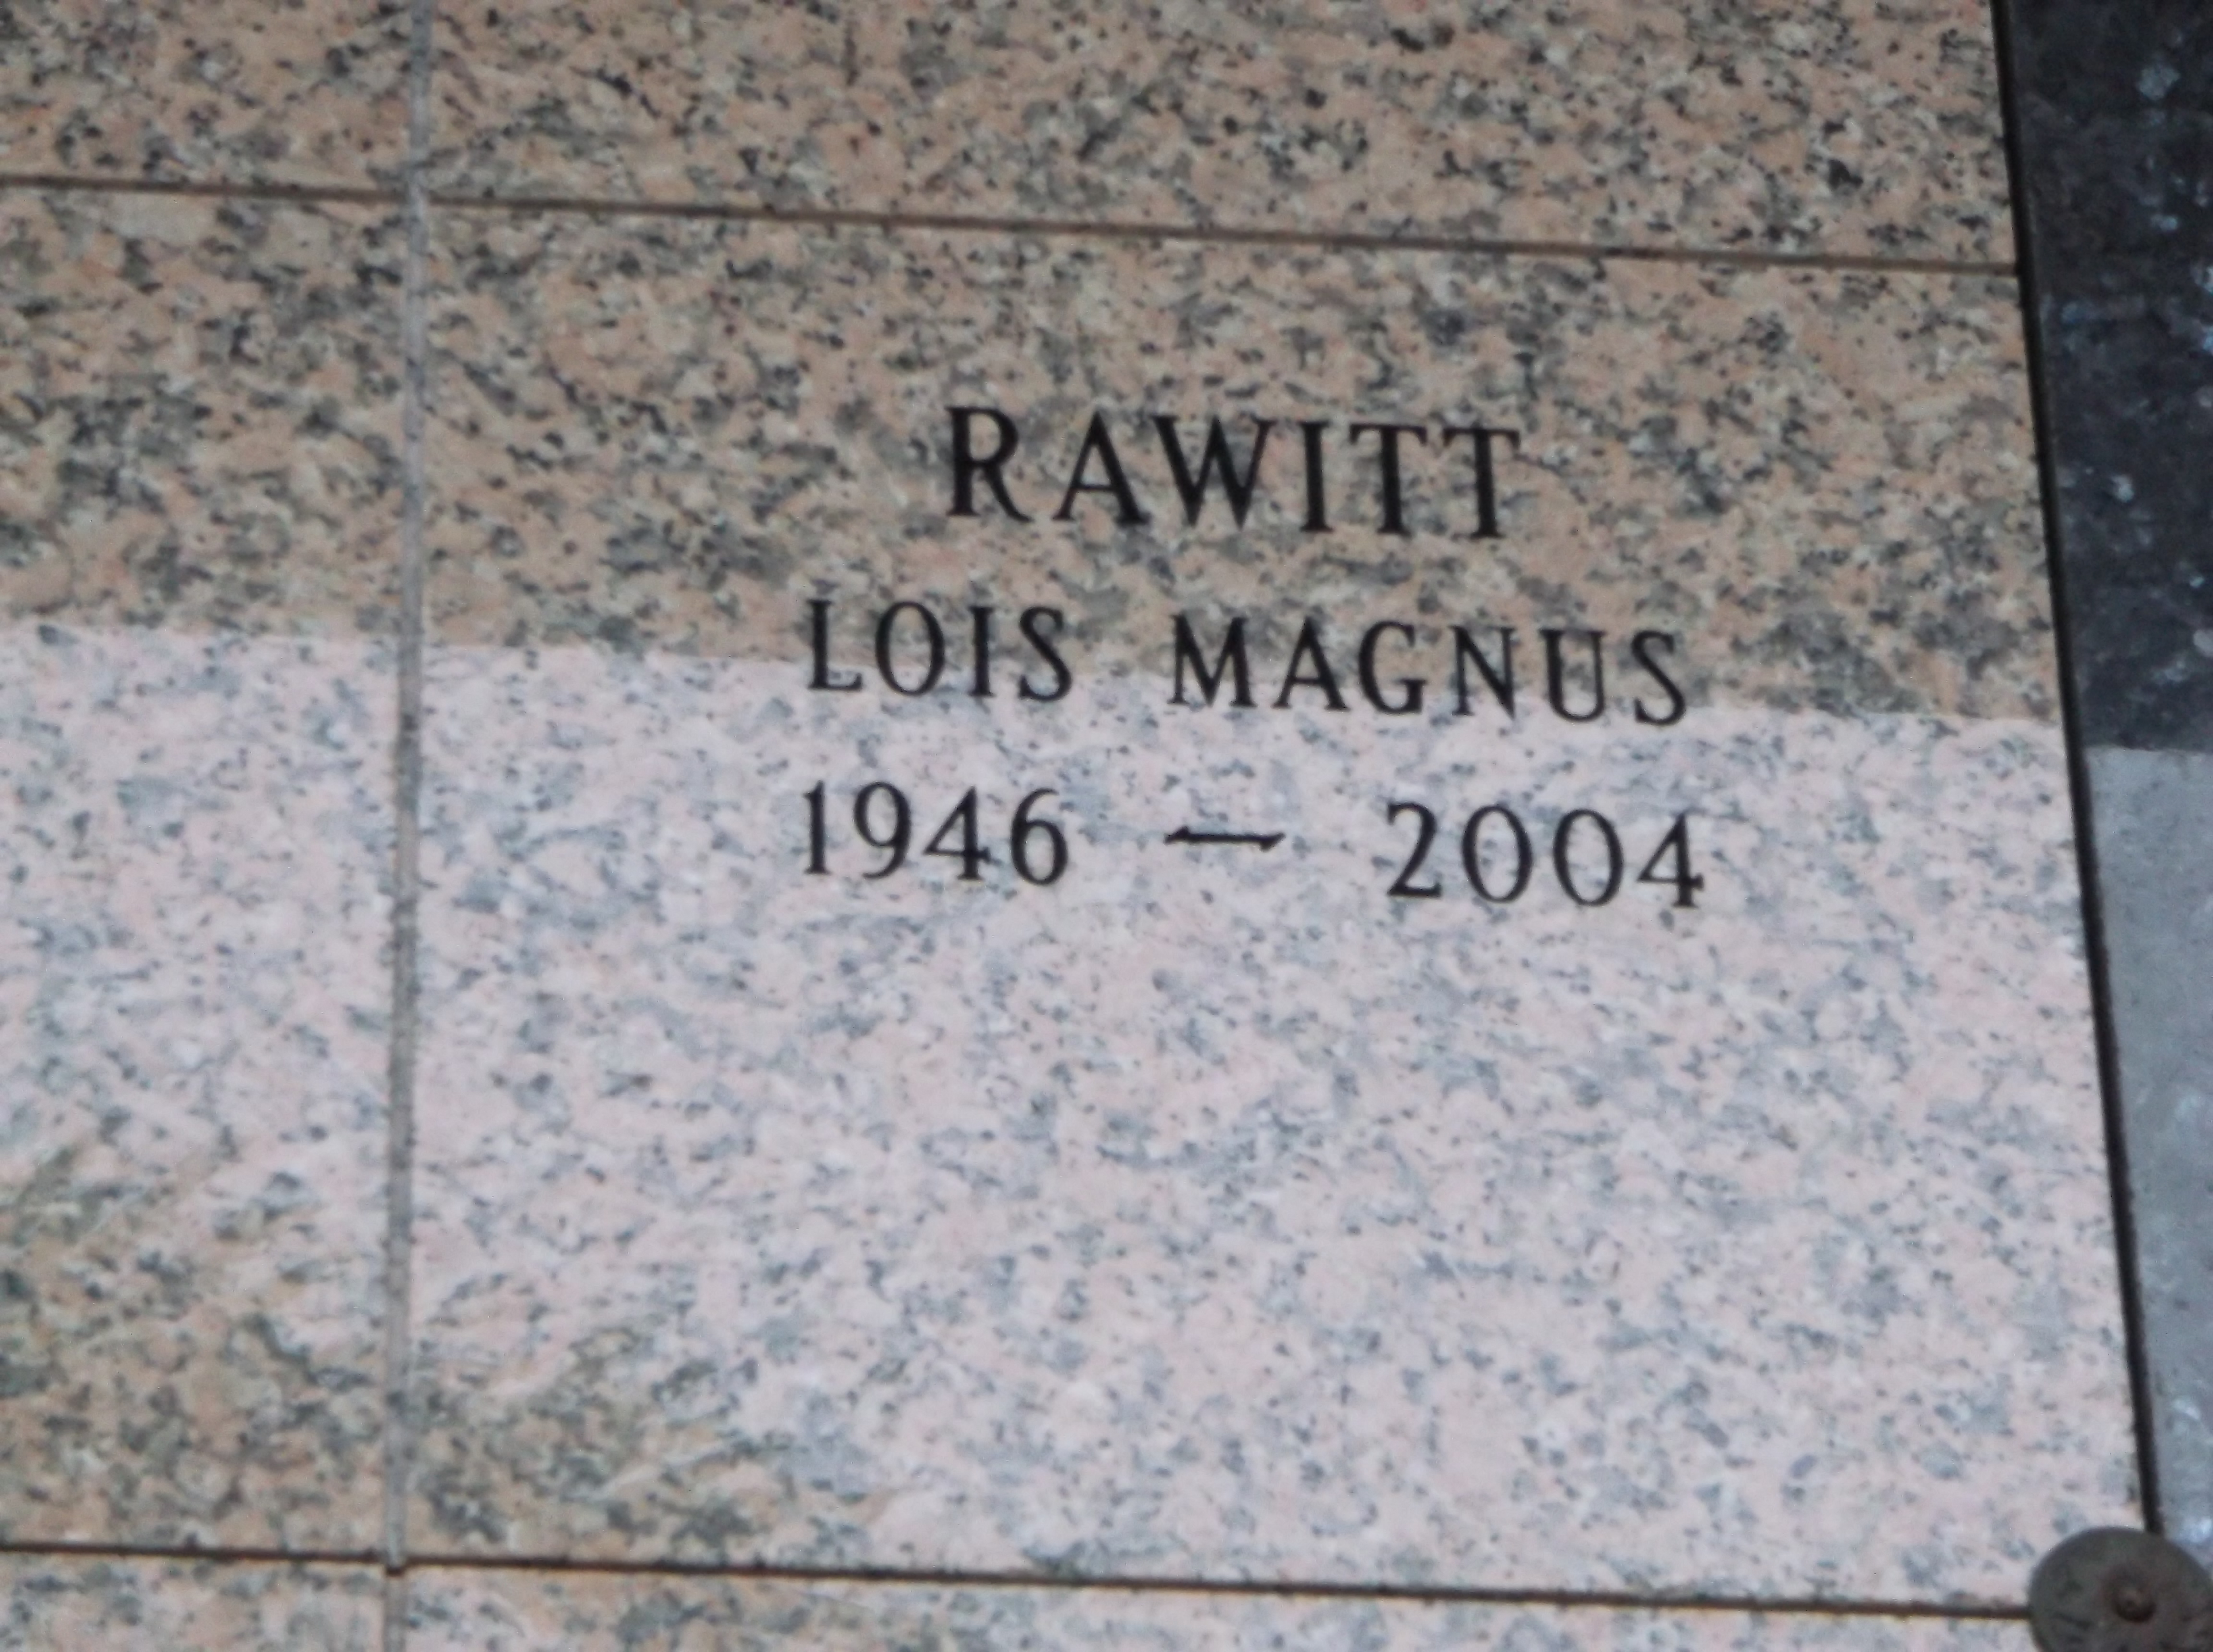 Lois Magnus Rawitt